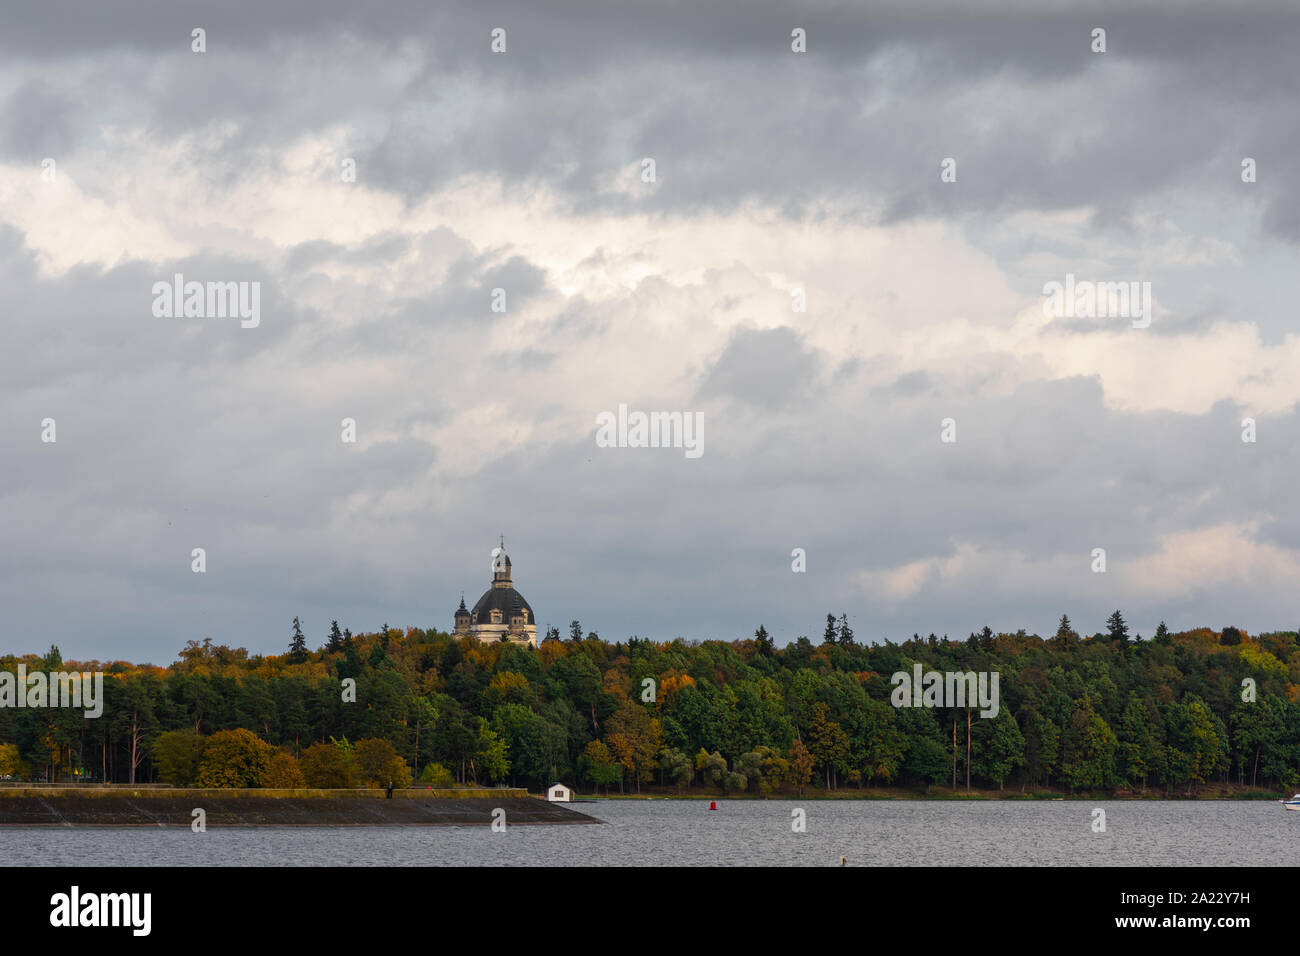 Pazaislis Monastery captured from another side of Kaunas lagoon ir autumn season. Stock Photo